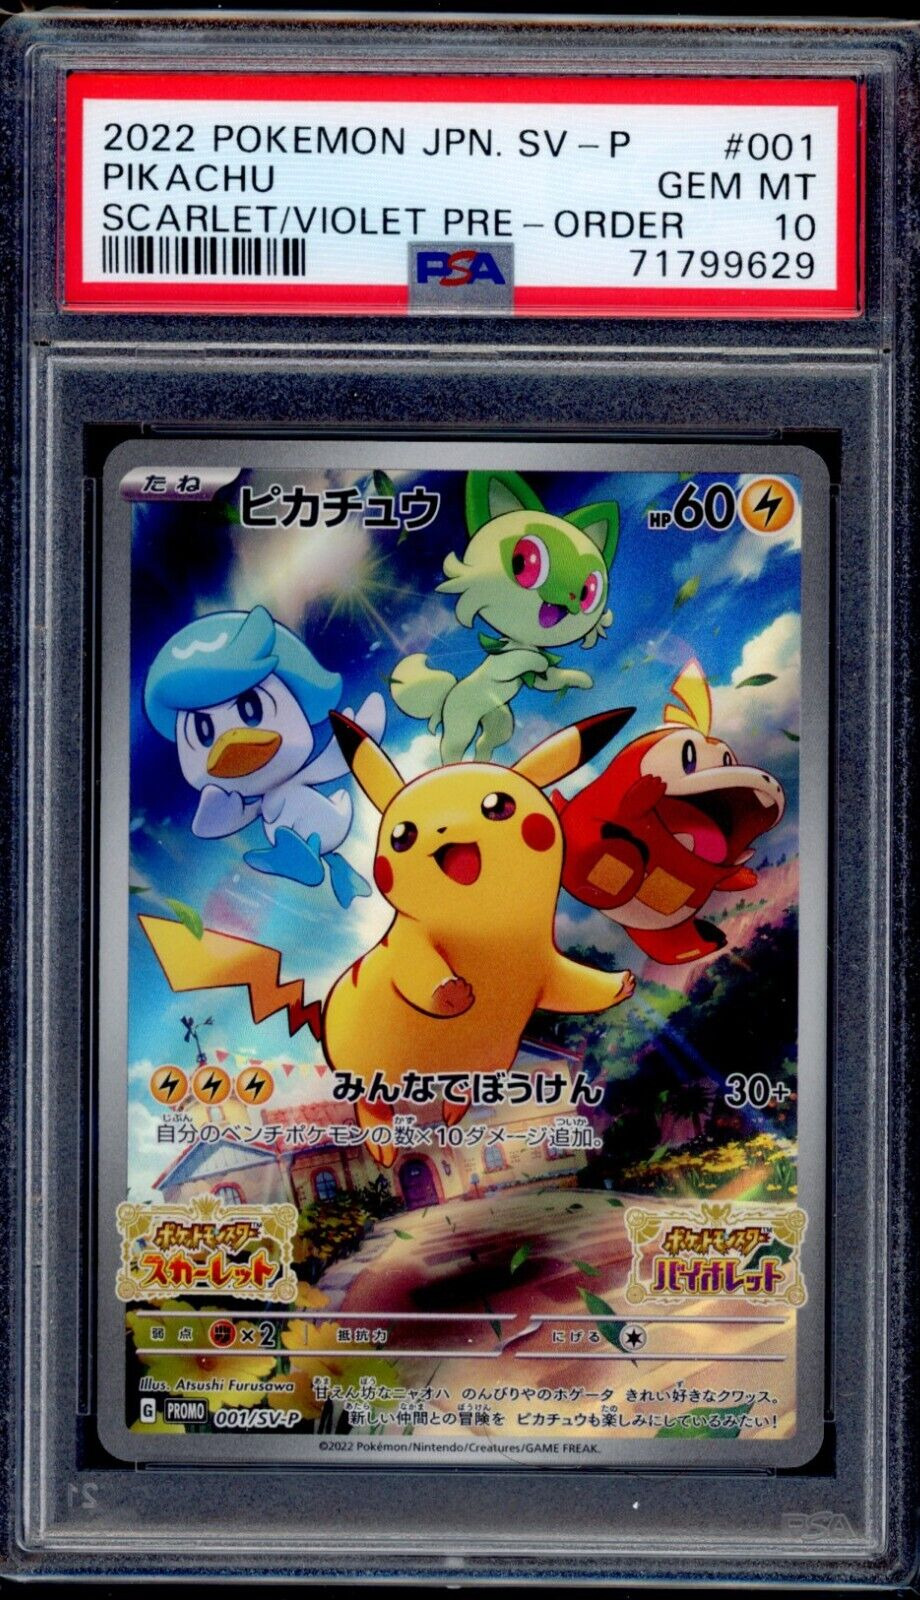 PSA 10 Pikachu 2022 Pokemon Card 001/SV:P Scarlet/Violet Pre-Order Promo